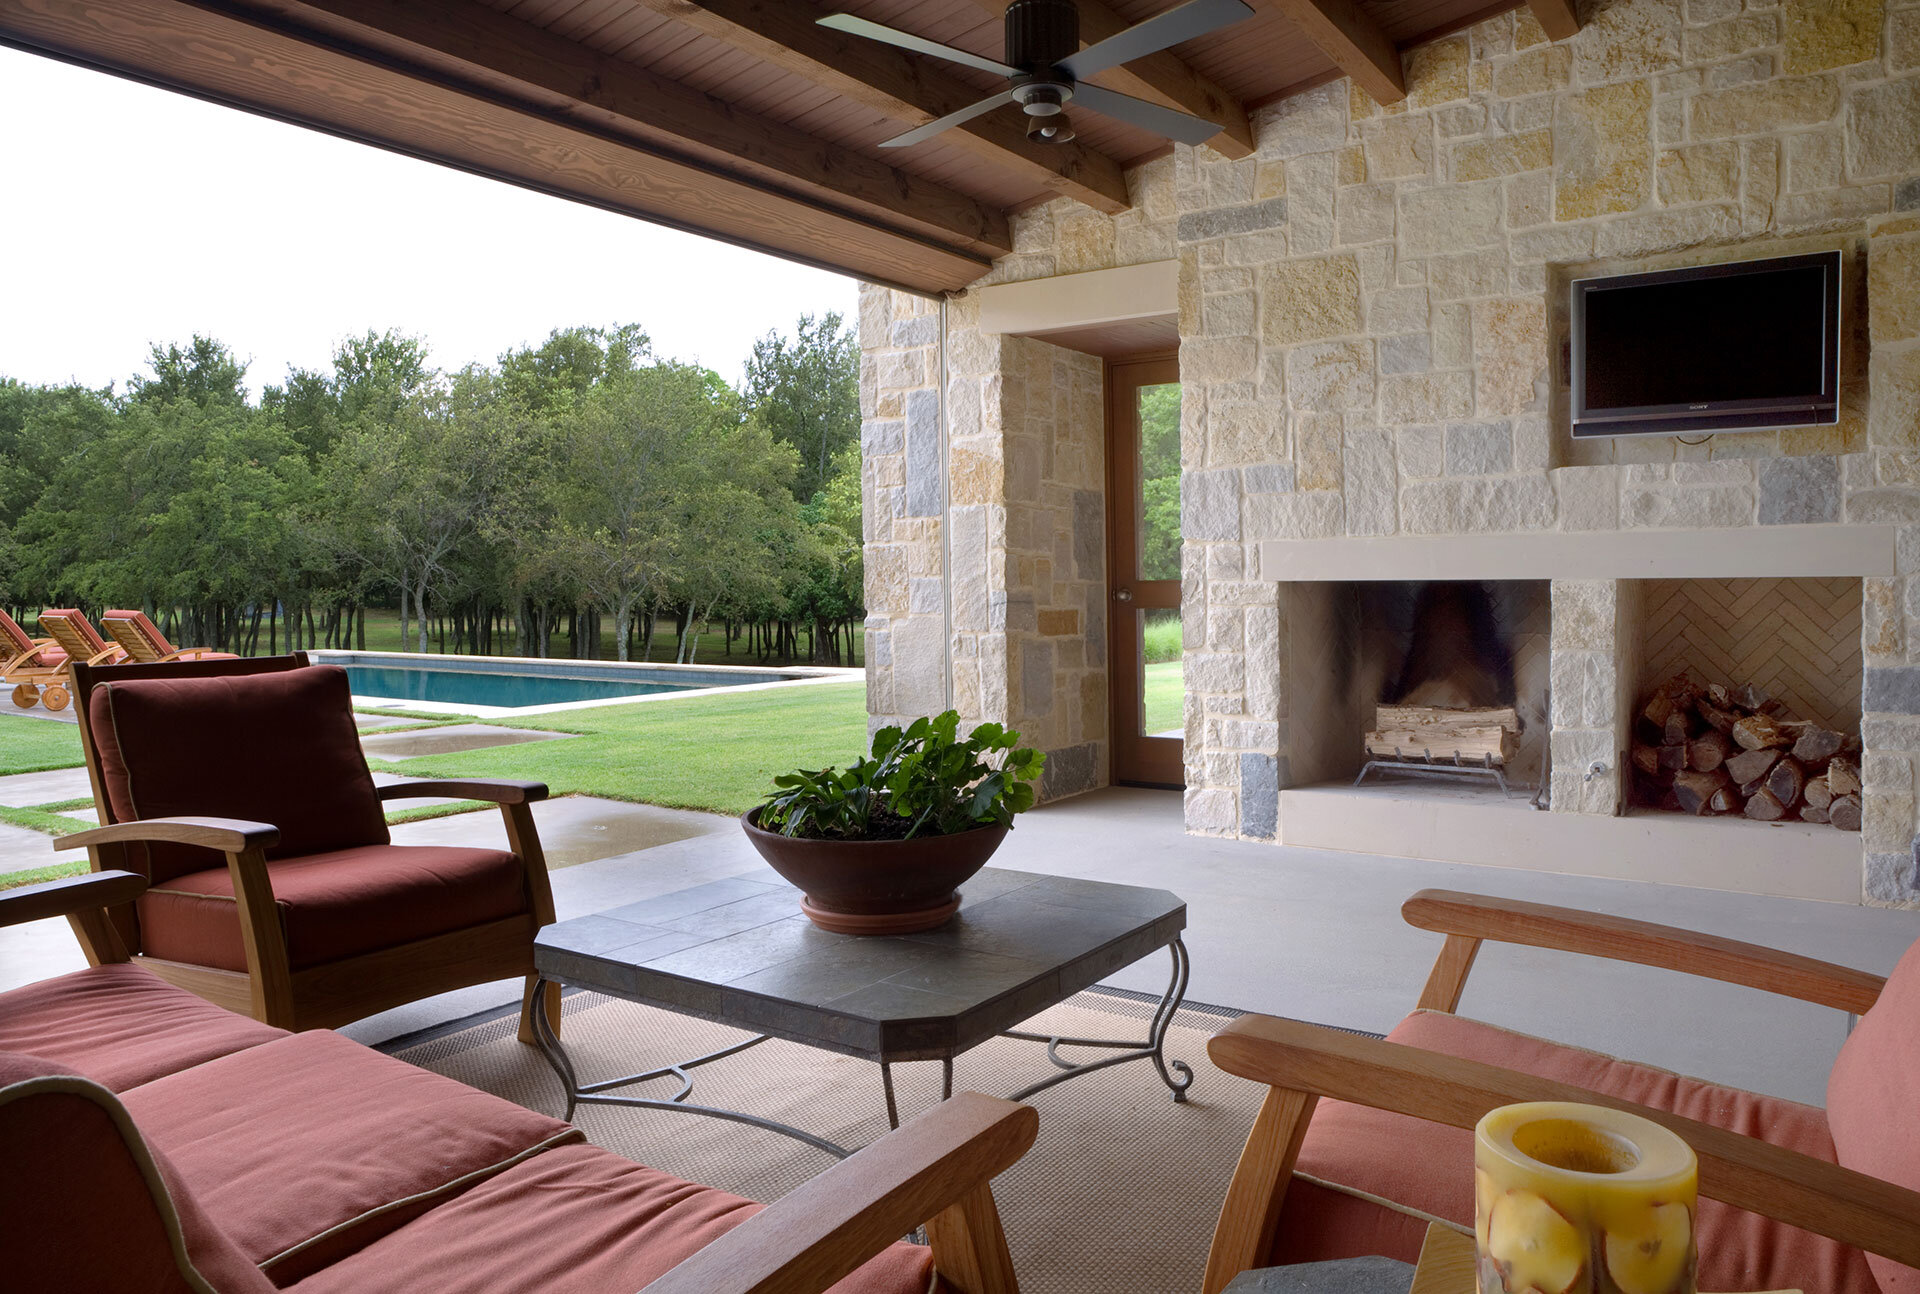  Interior designer Three Graces Interiors designed beautiful Texas outdoor entertaining options 